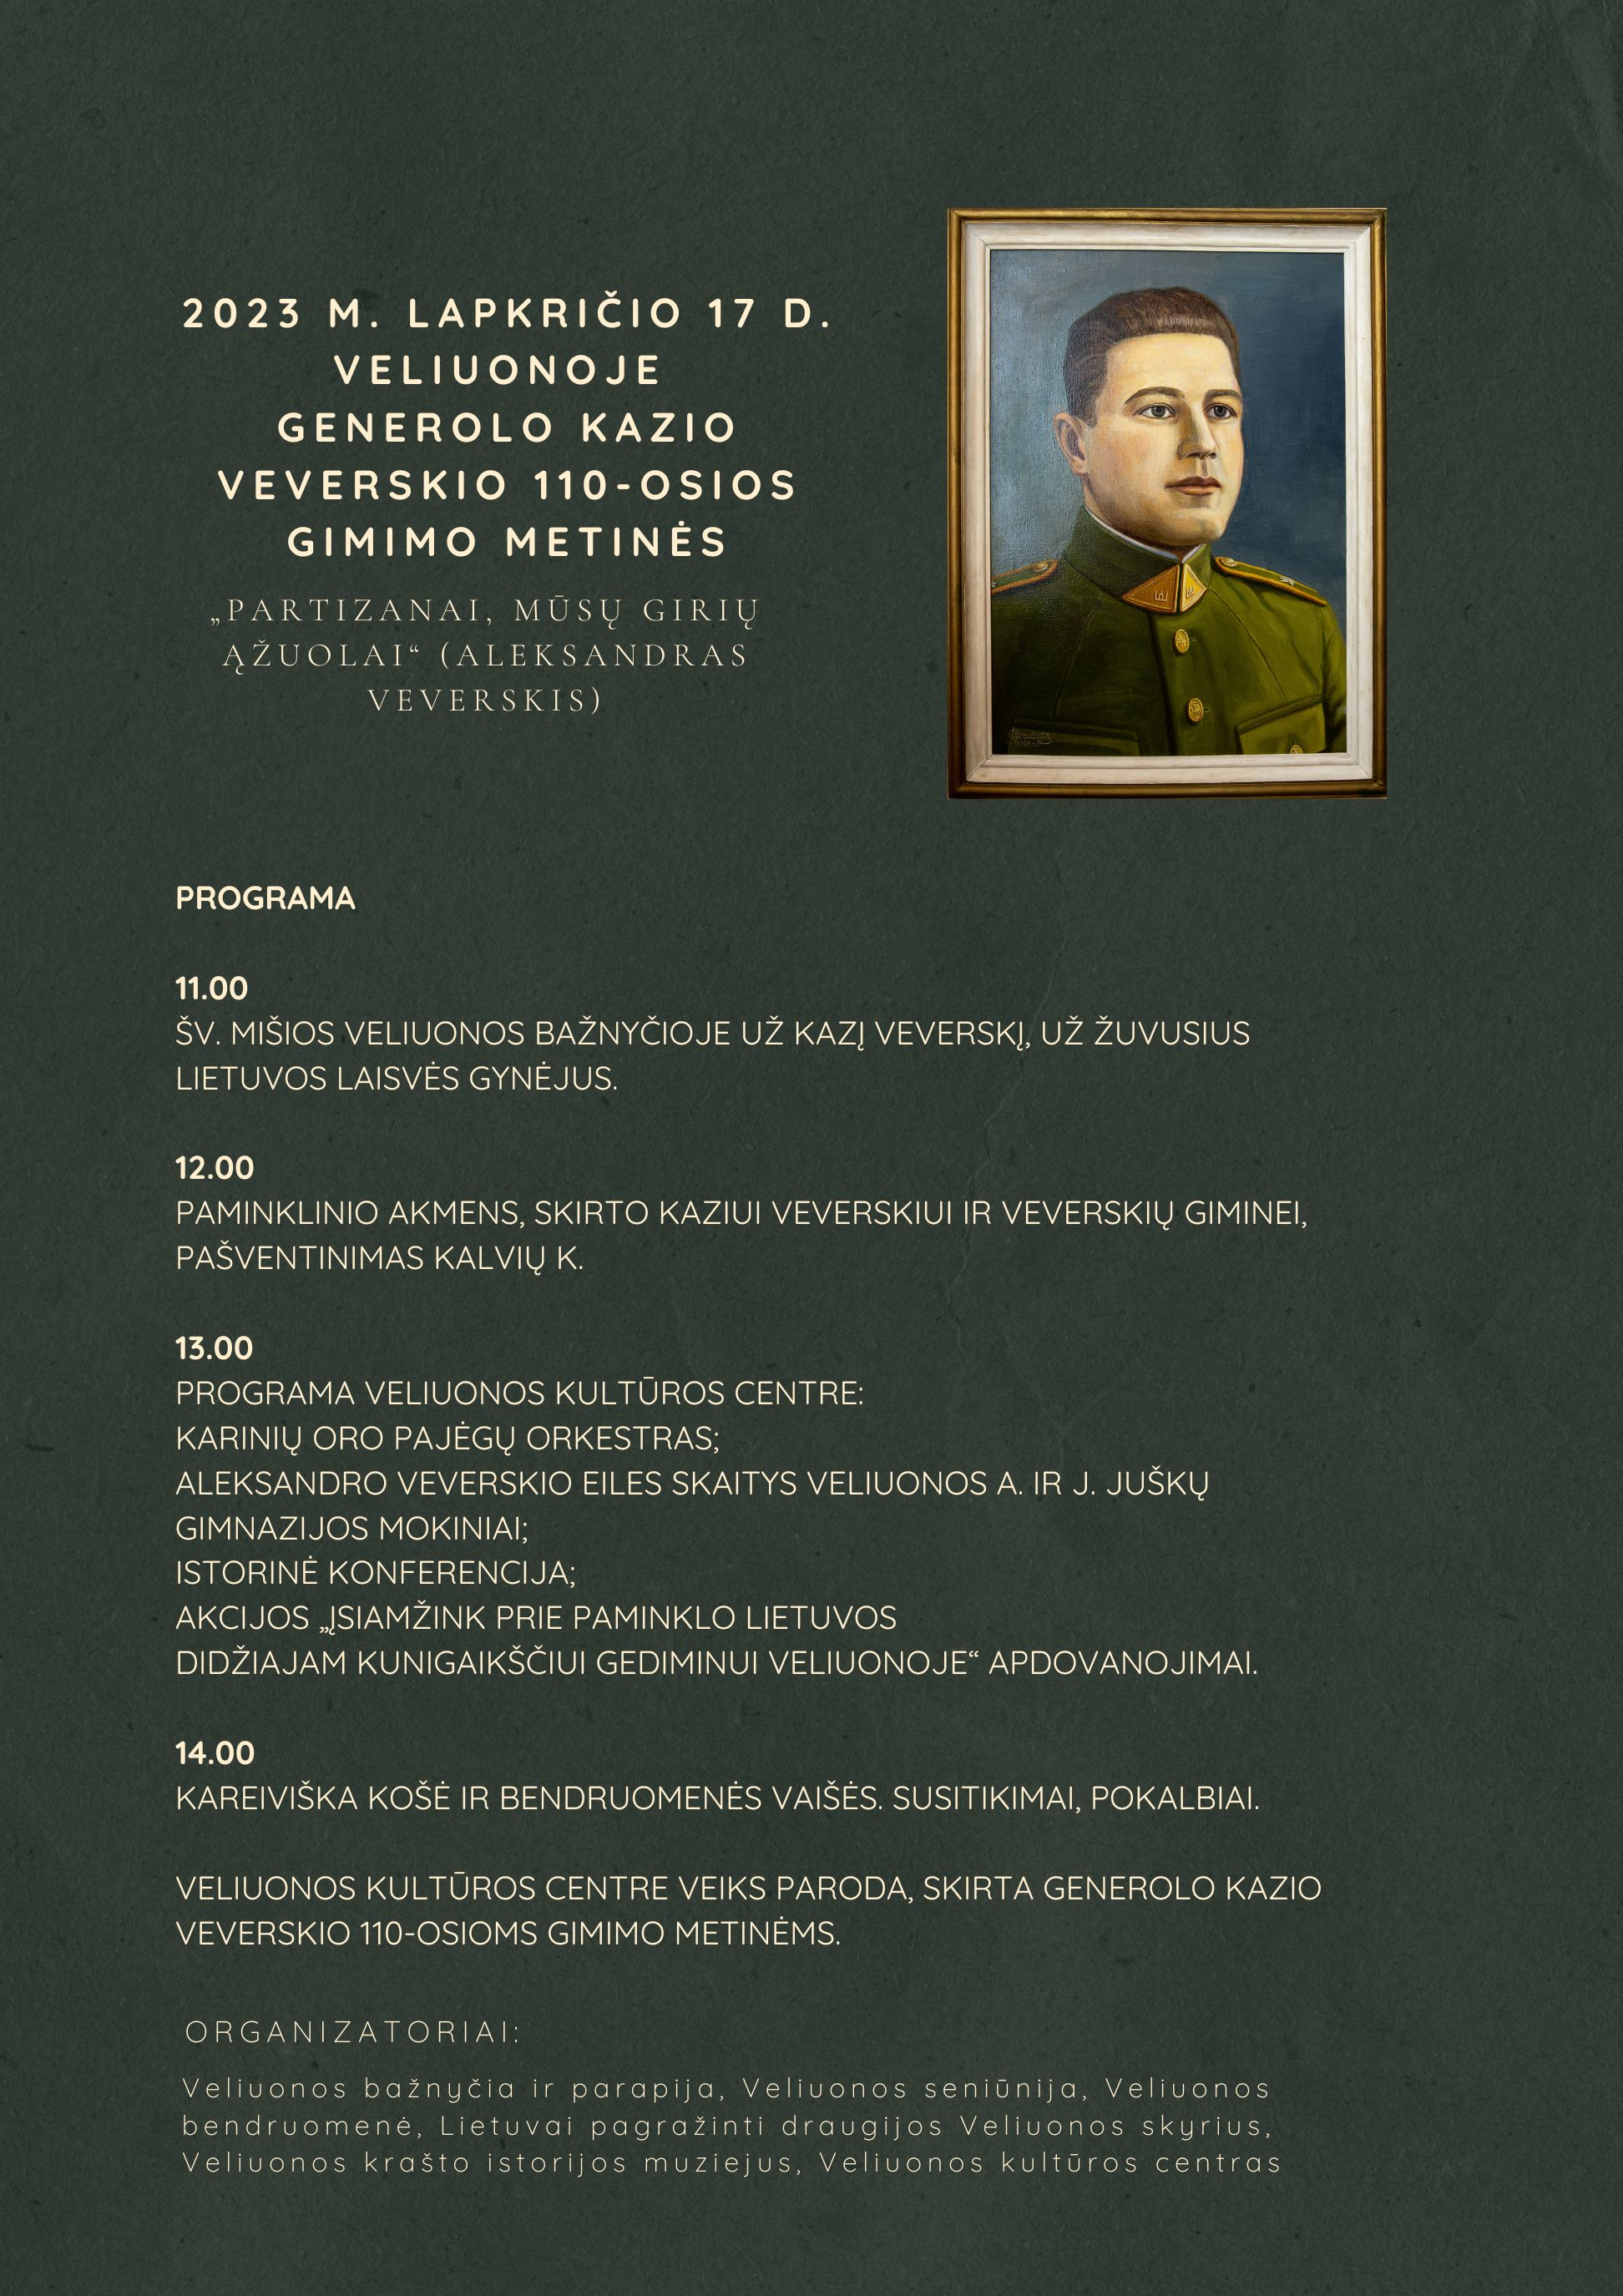 Generolo Kazio Veverskio 110-osios gimimo metinės